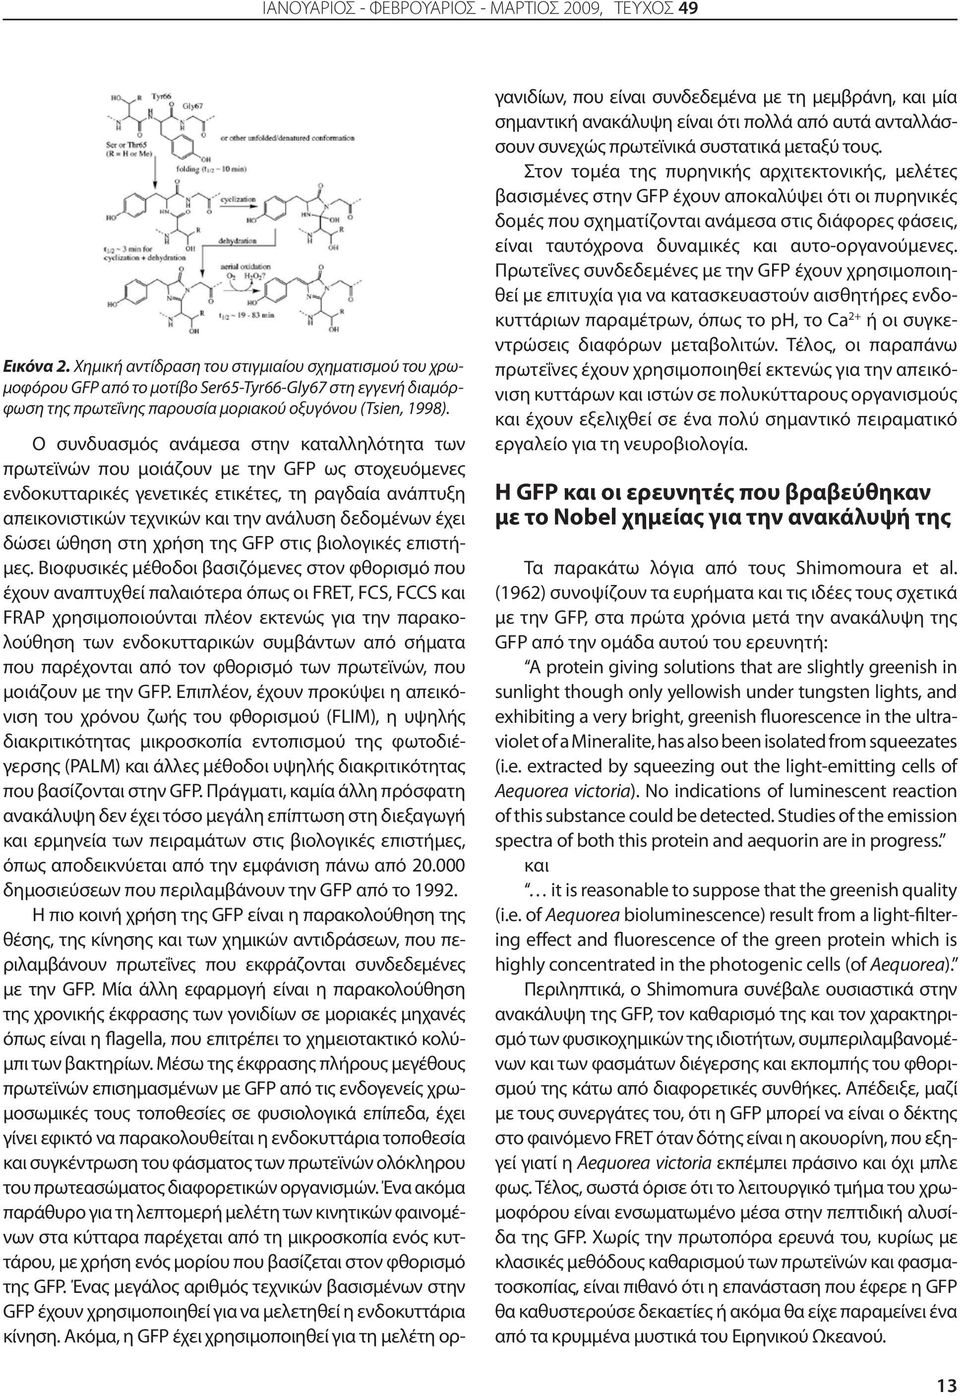 Ο συνδυασμός ανάμεσα στην καταλληλότητα των πρωτεϊνών που μοιάζουν με την GFP ως στοχευόμενες ενδοκυτταρικές γενετικές ετικέτες, τη ραγδαία ανάπτυξη απεικονιστικών τεχνικών και την ανάλυση δεδομένων